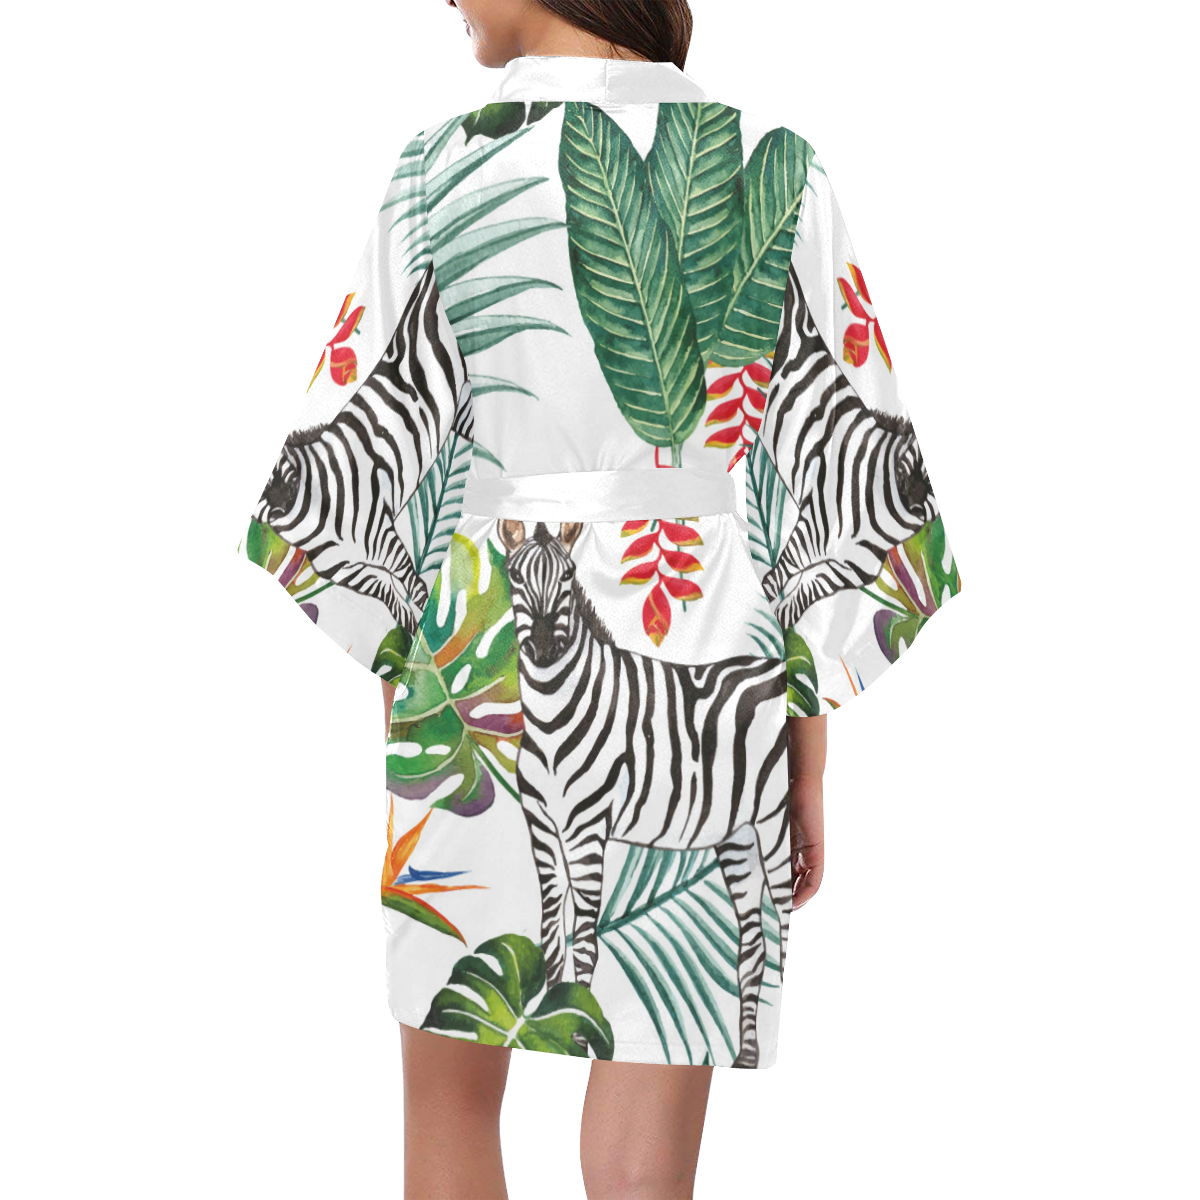 Watercolored Adorable Zebra Kimono Robe